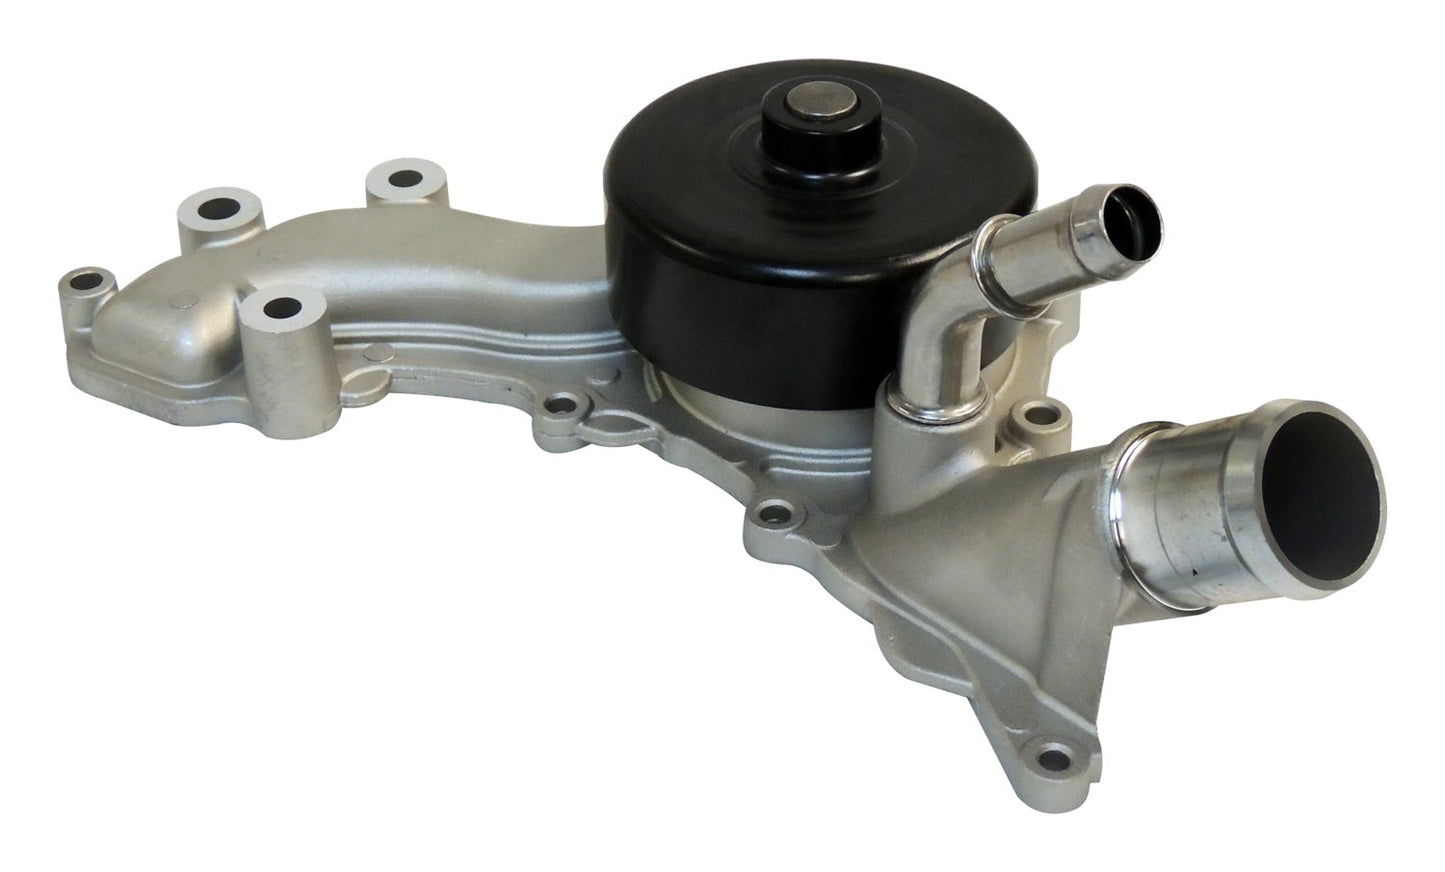 Crown Automotive - Aluminum Unpainted Water Pump - 5184498AI